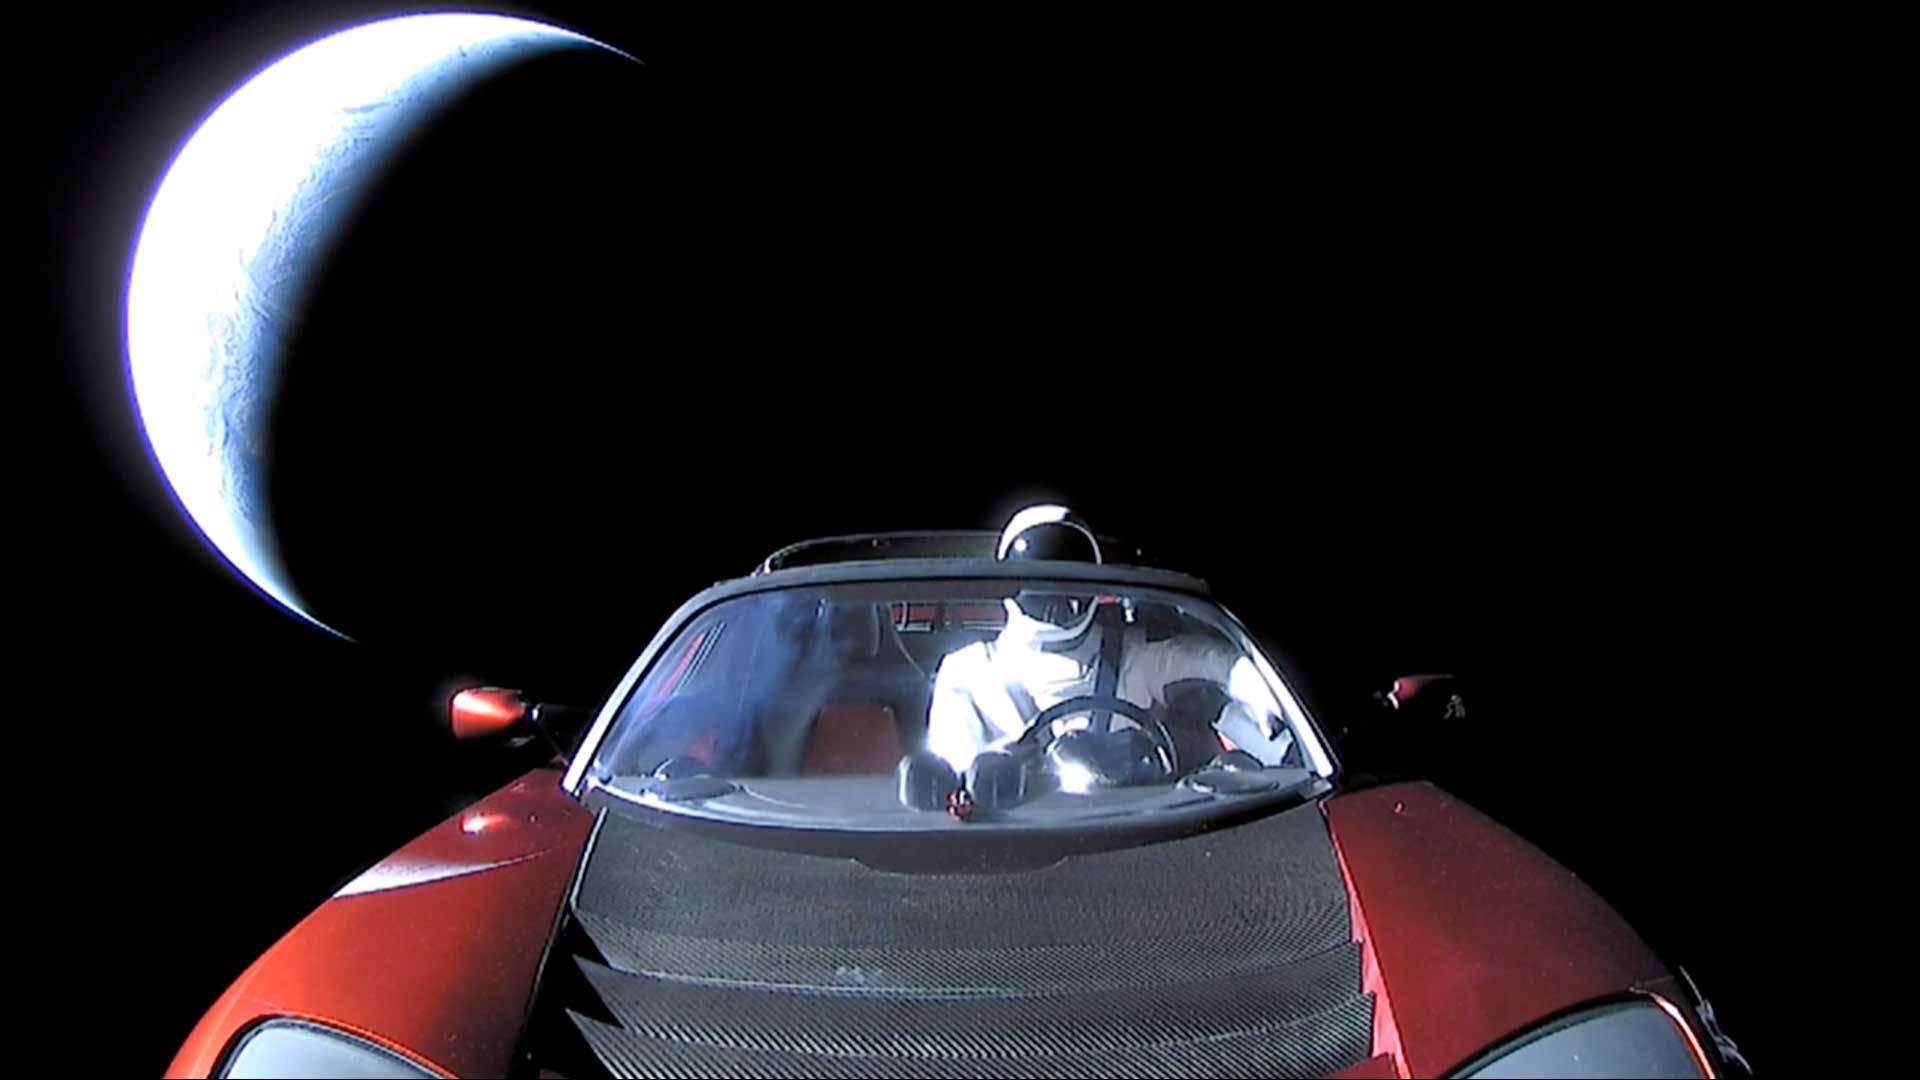 خودروی تسلا رودستر در فضا!,اخبار علمی,خبرهای علمی,نجوم و فضا